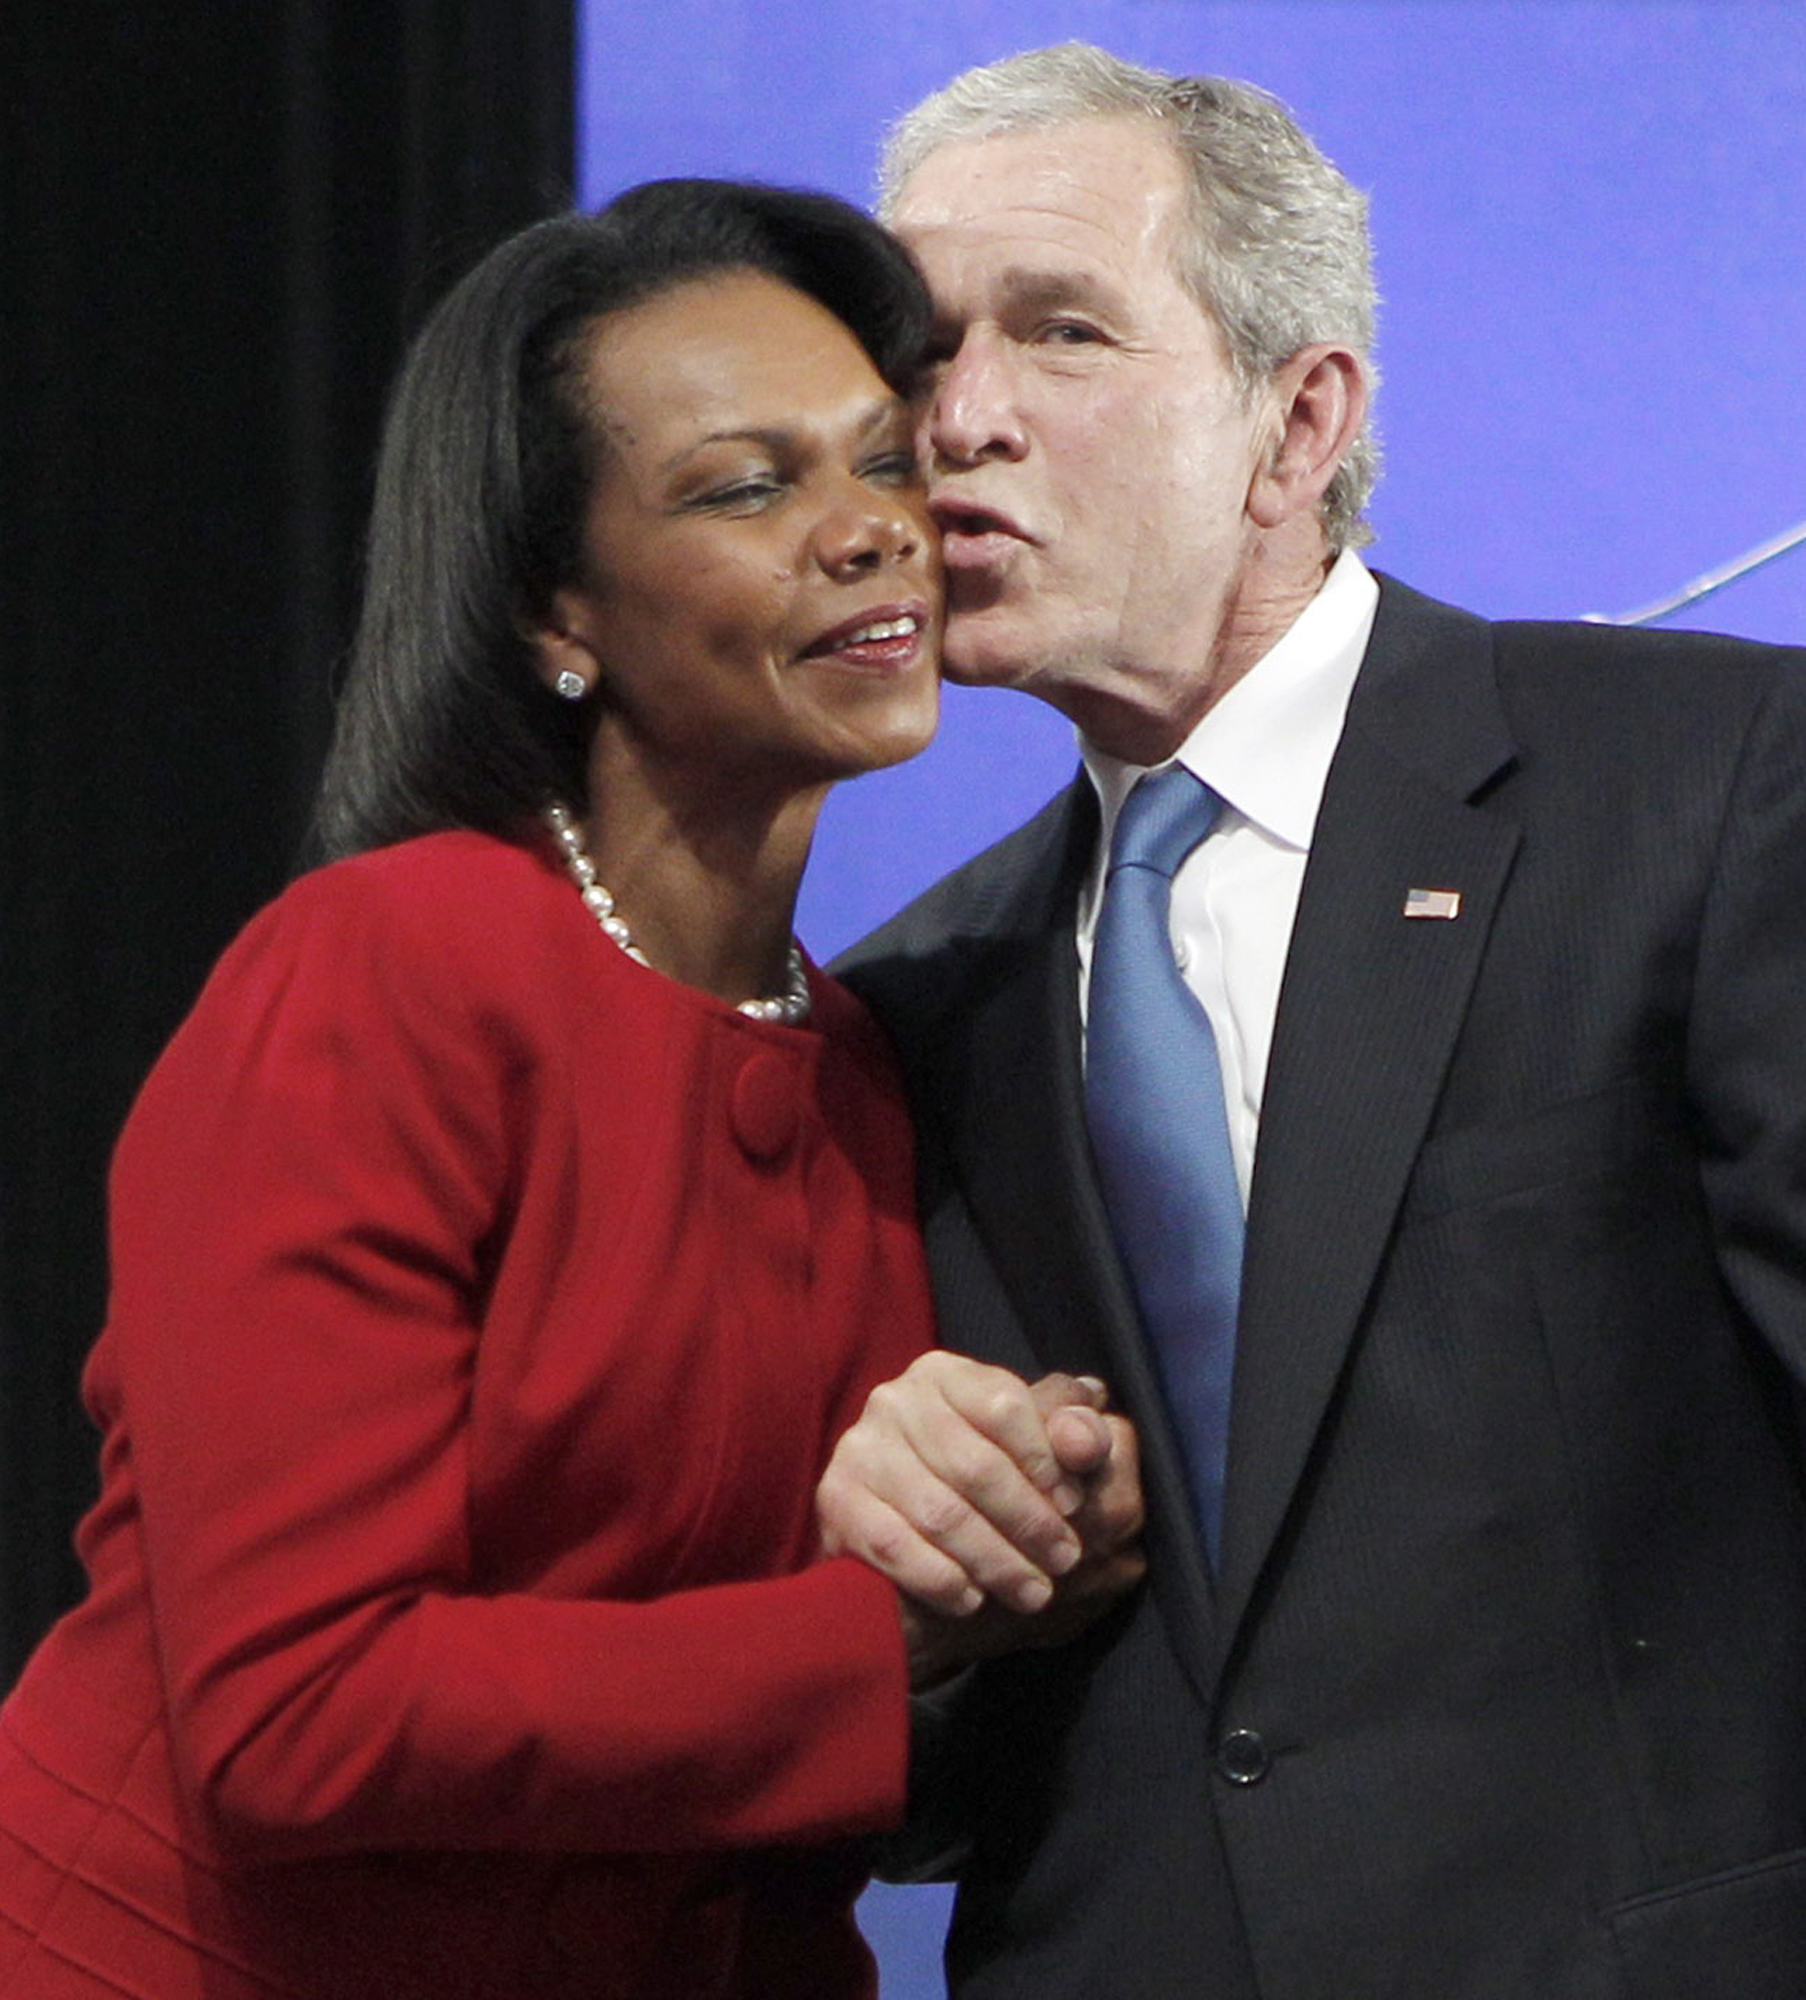 George W. Bush, Condolezza Rice